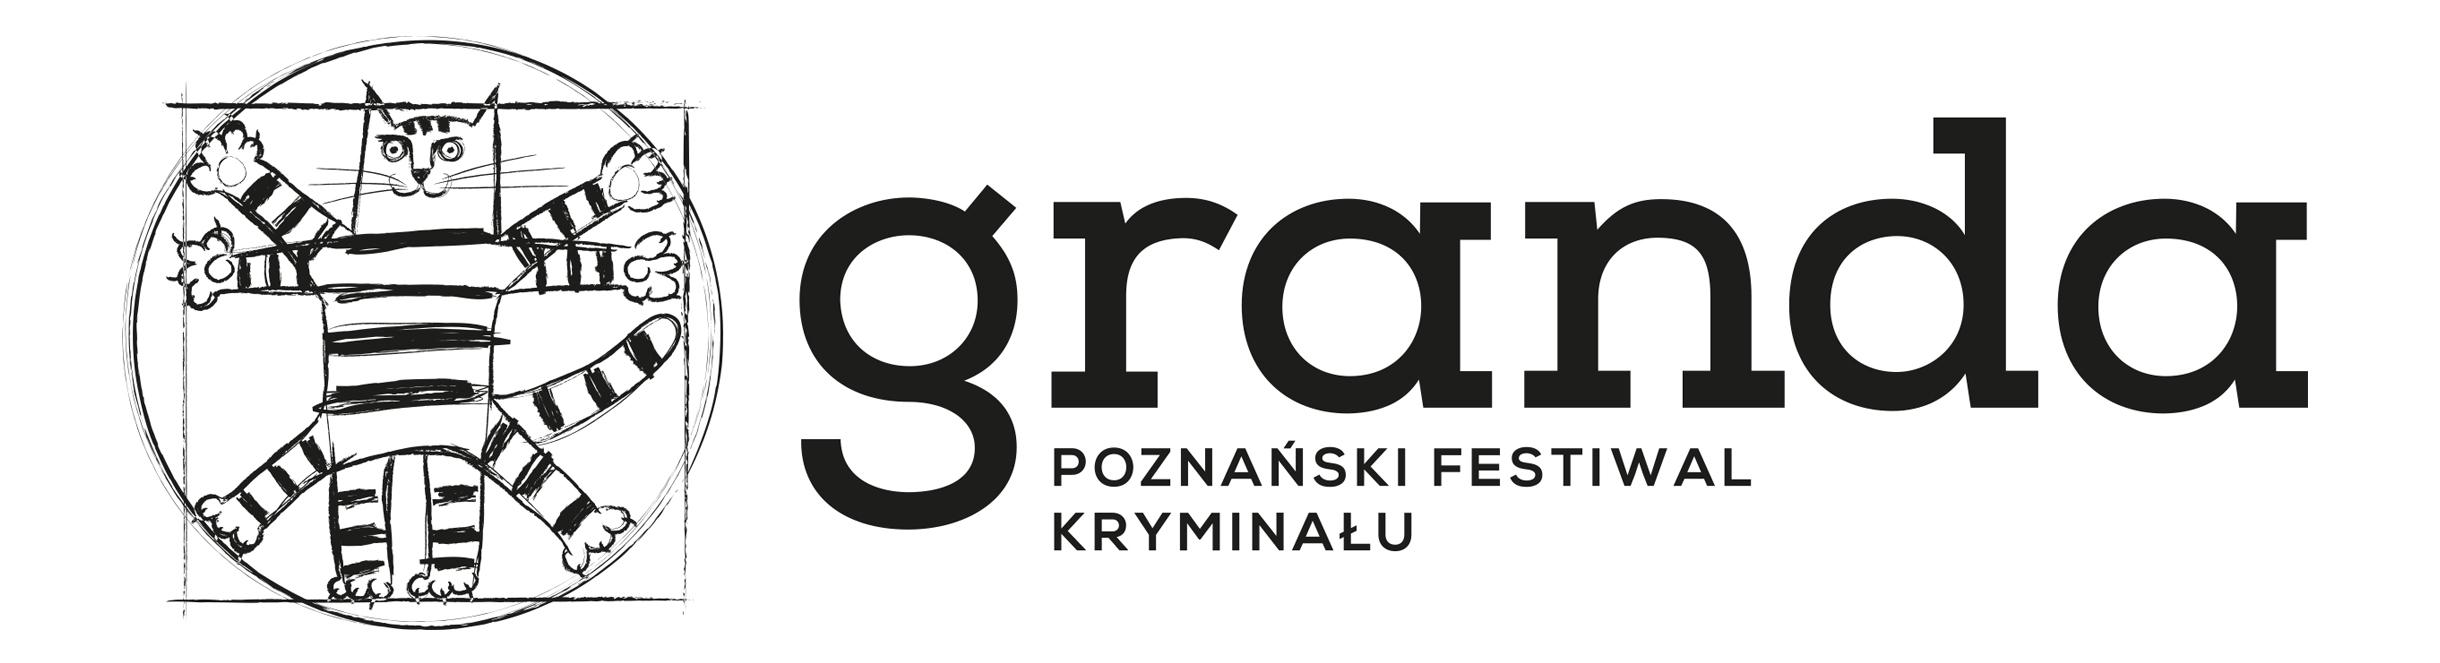 Logo Poznańskiego Festiwalu Kryminału "Granda" przedstawiające pasiastego kota wpisanego w okrąg i kwadrat, nawiązującego do rysunku Leonarda Da Vinci